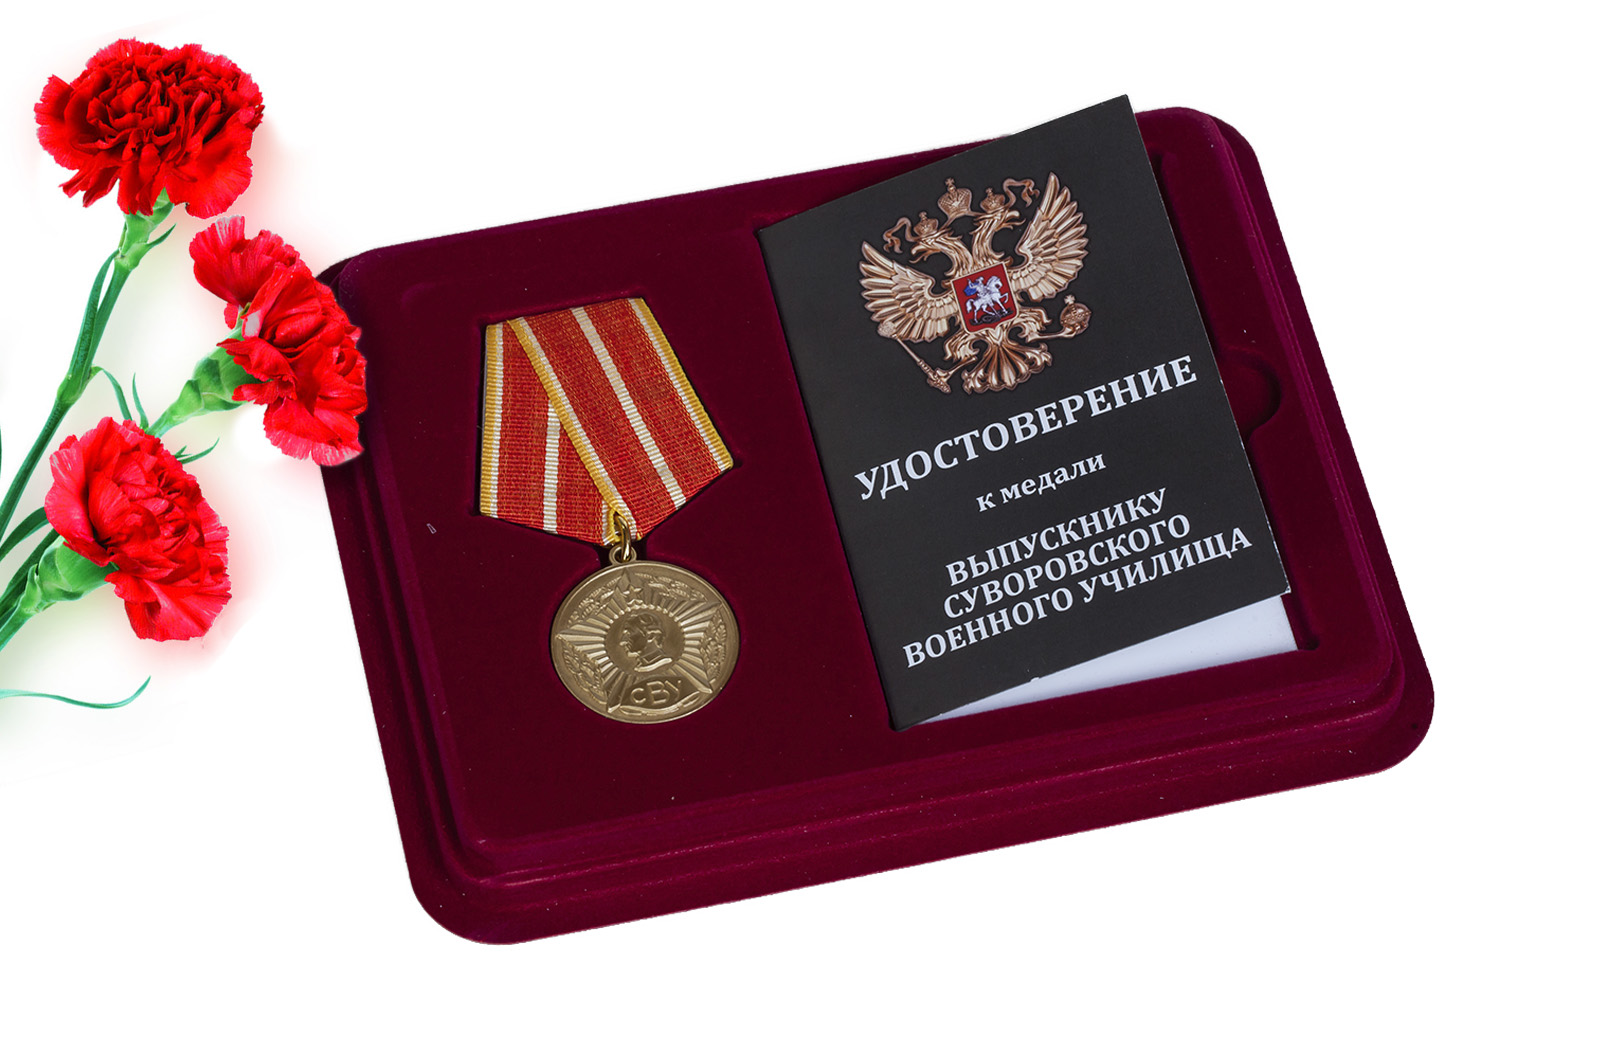 Купить общественную медаль Выпускнику Суворовского военного училища оптом или в розницу